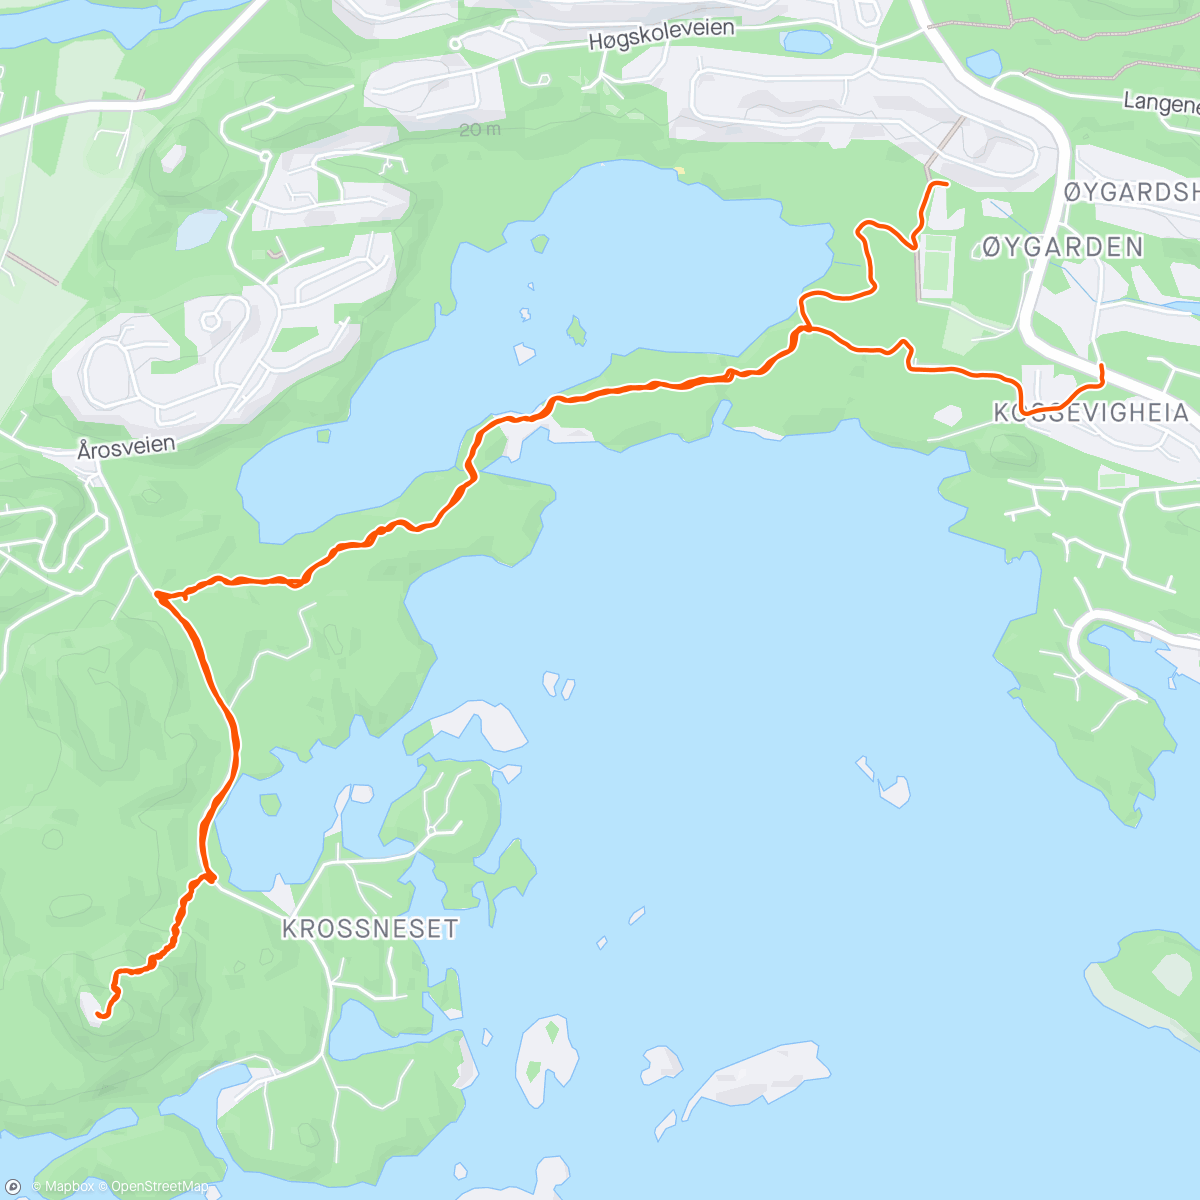 「FTJ: Årosveden」活動的地圖